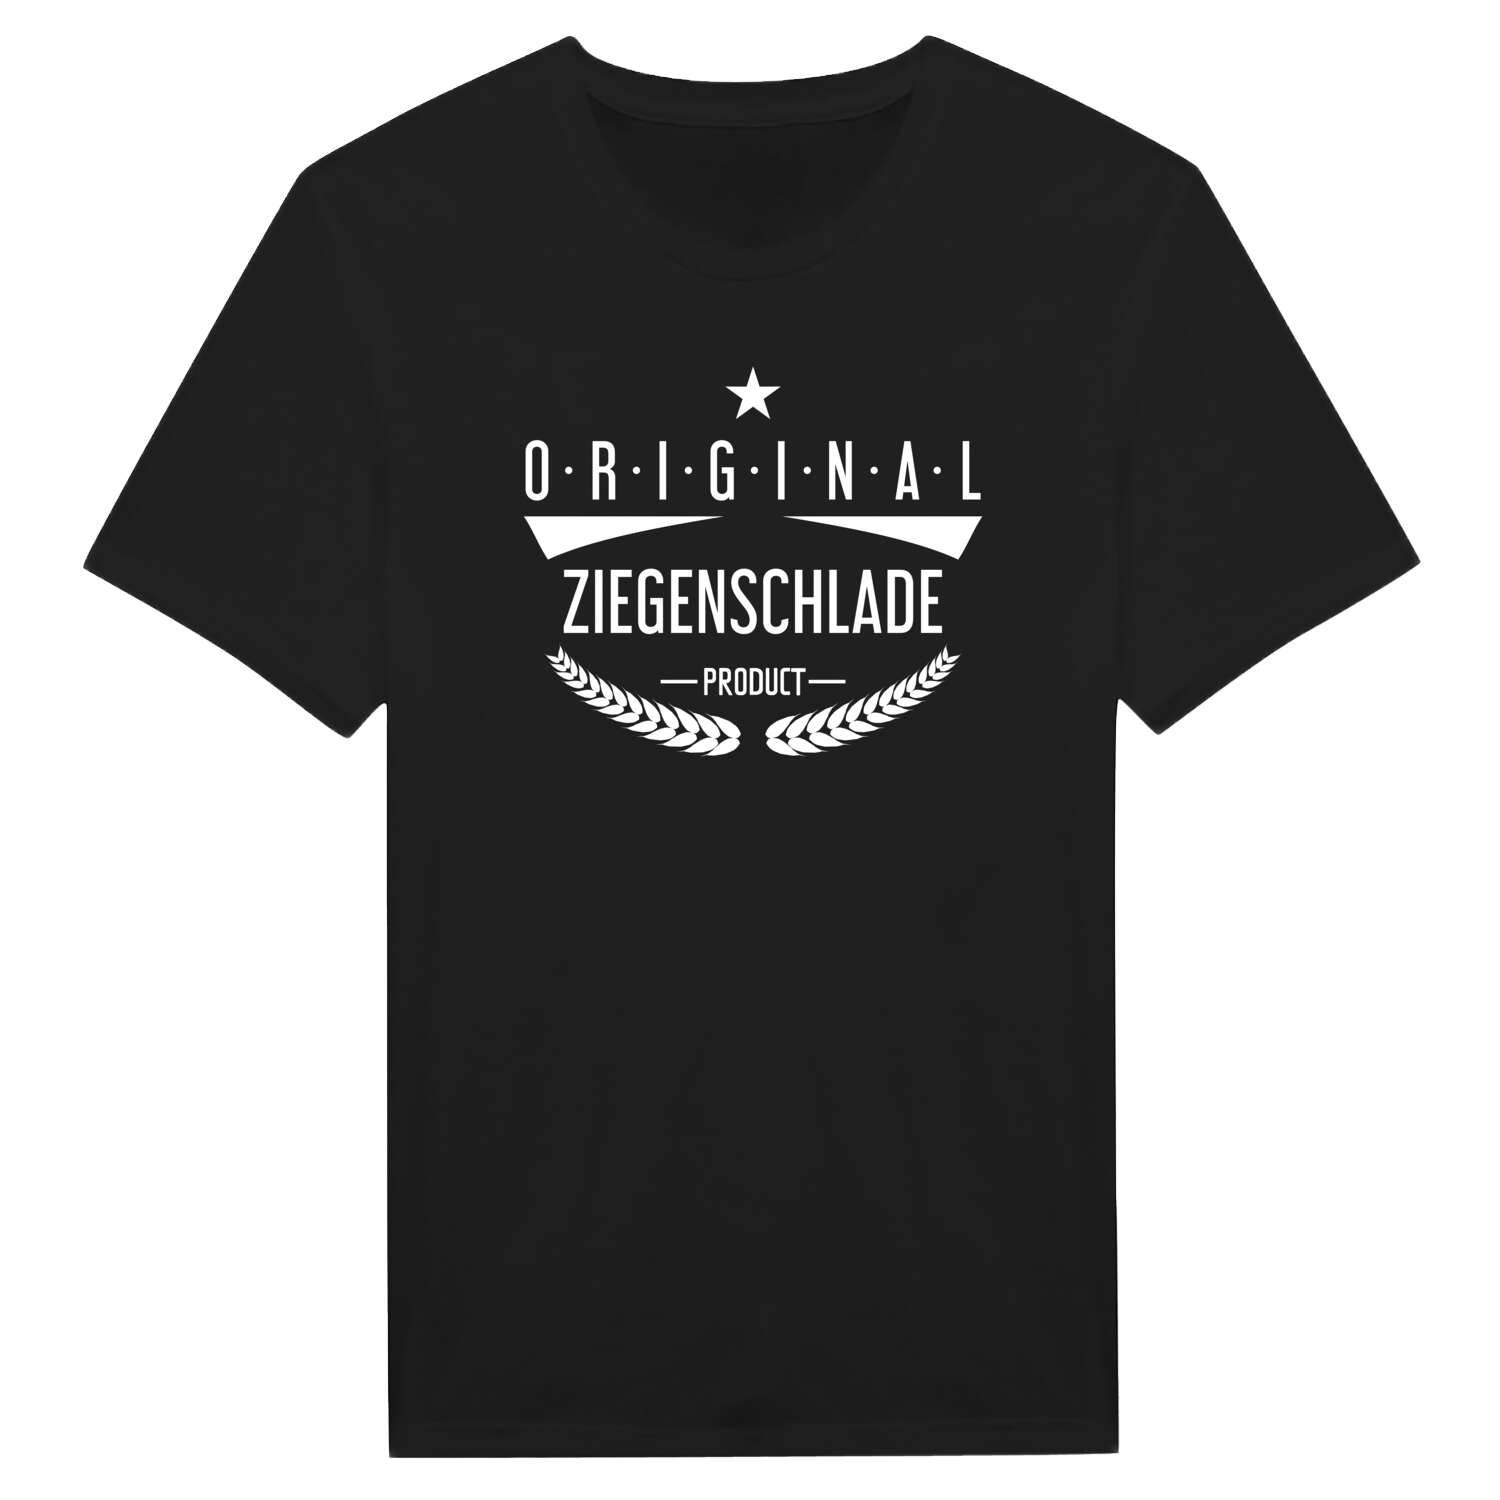 Ziegenschlade T-Shirt »Original Product«